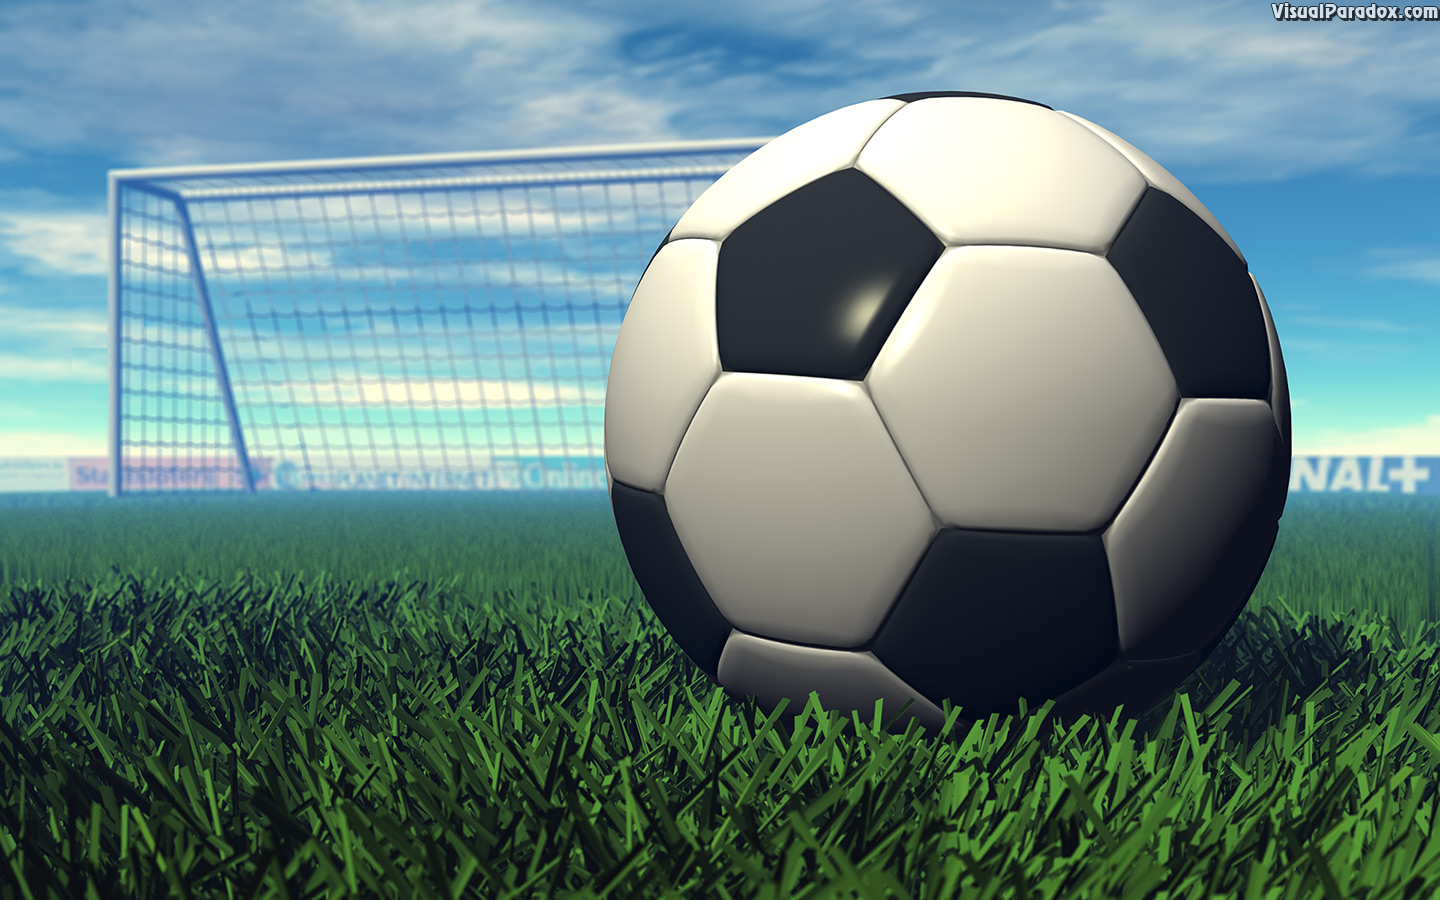 sport, football, goal, grass, game, ball, kick, sports, 3d, wallpaper